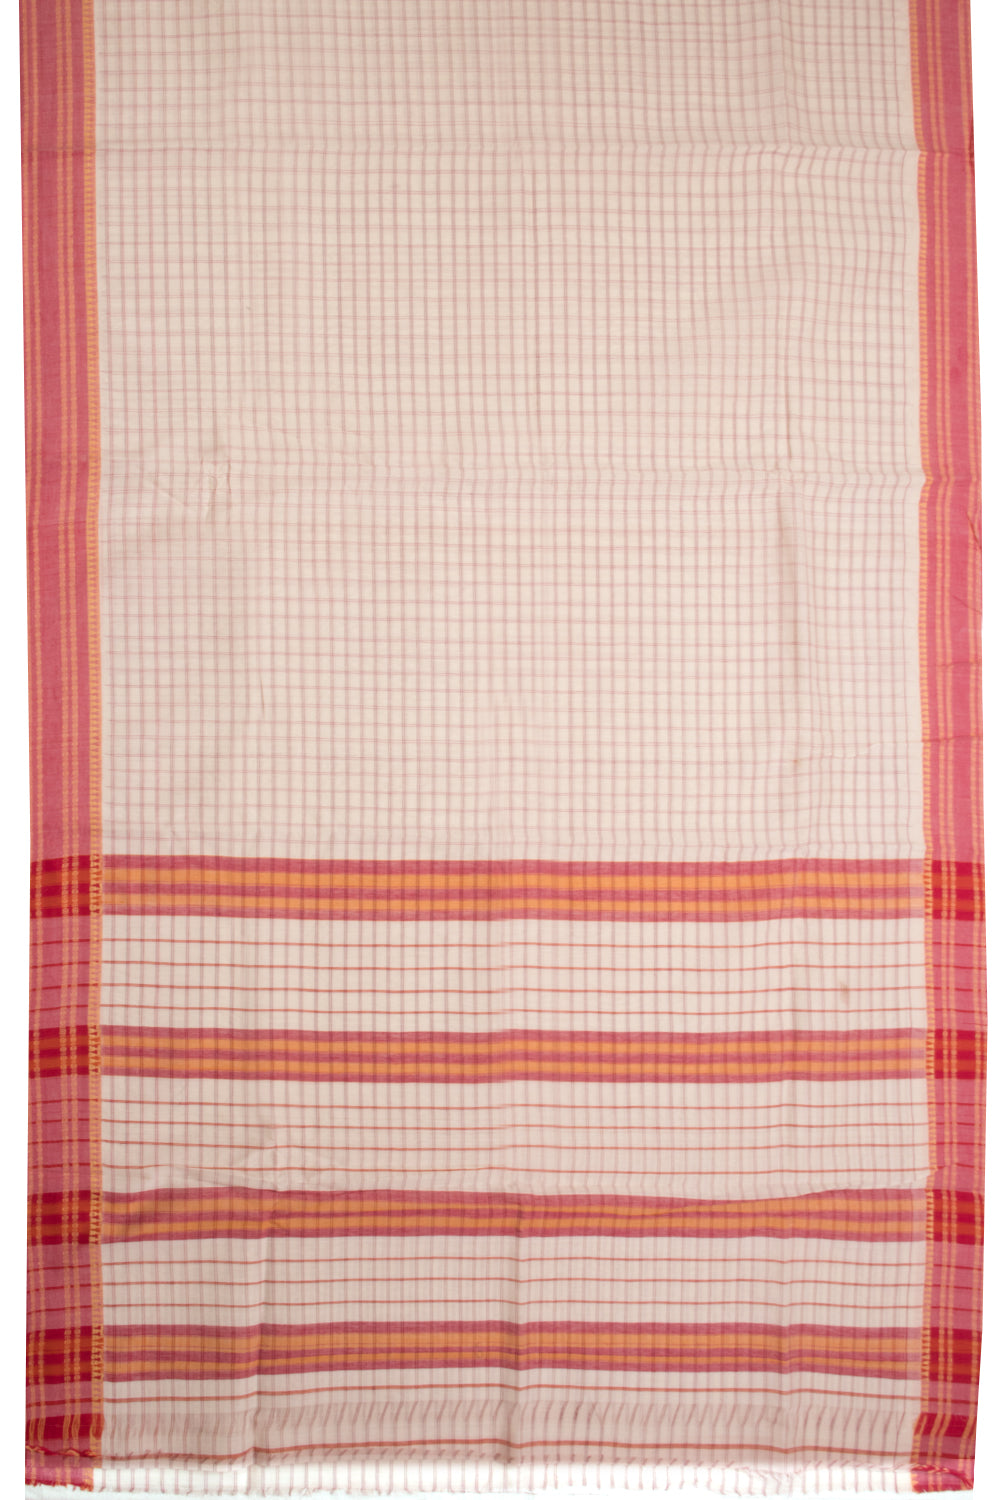 Off White Handloom Narayanpet Cotton Saree Without Blouse 10064385 - Avishya